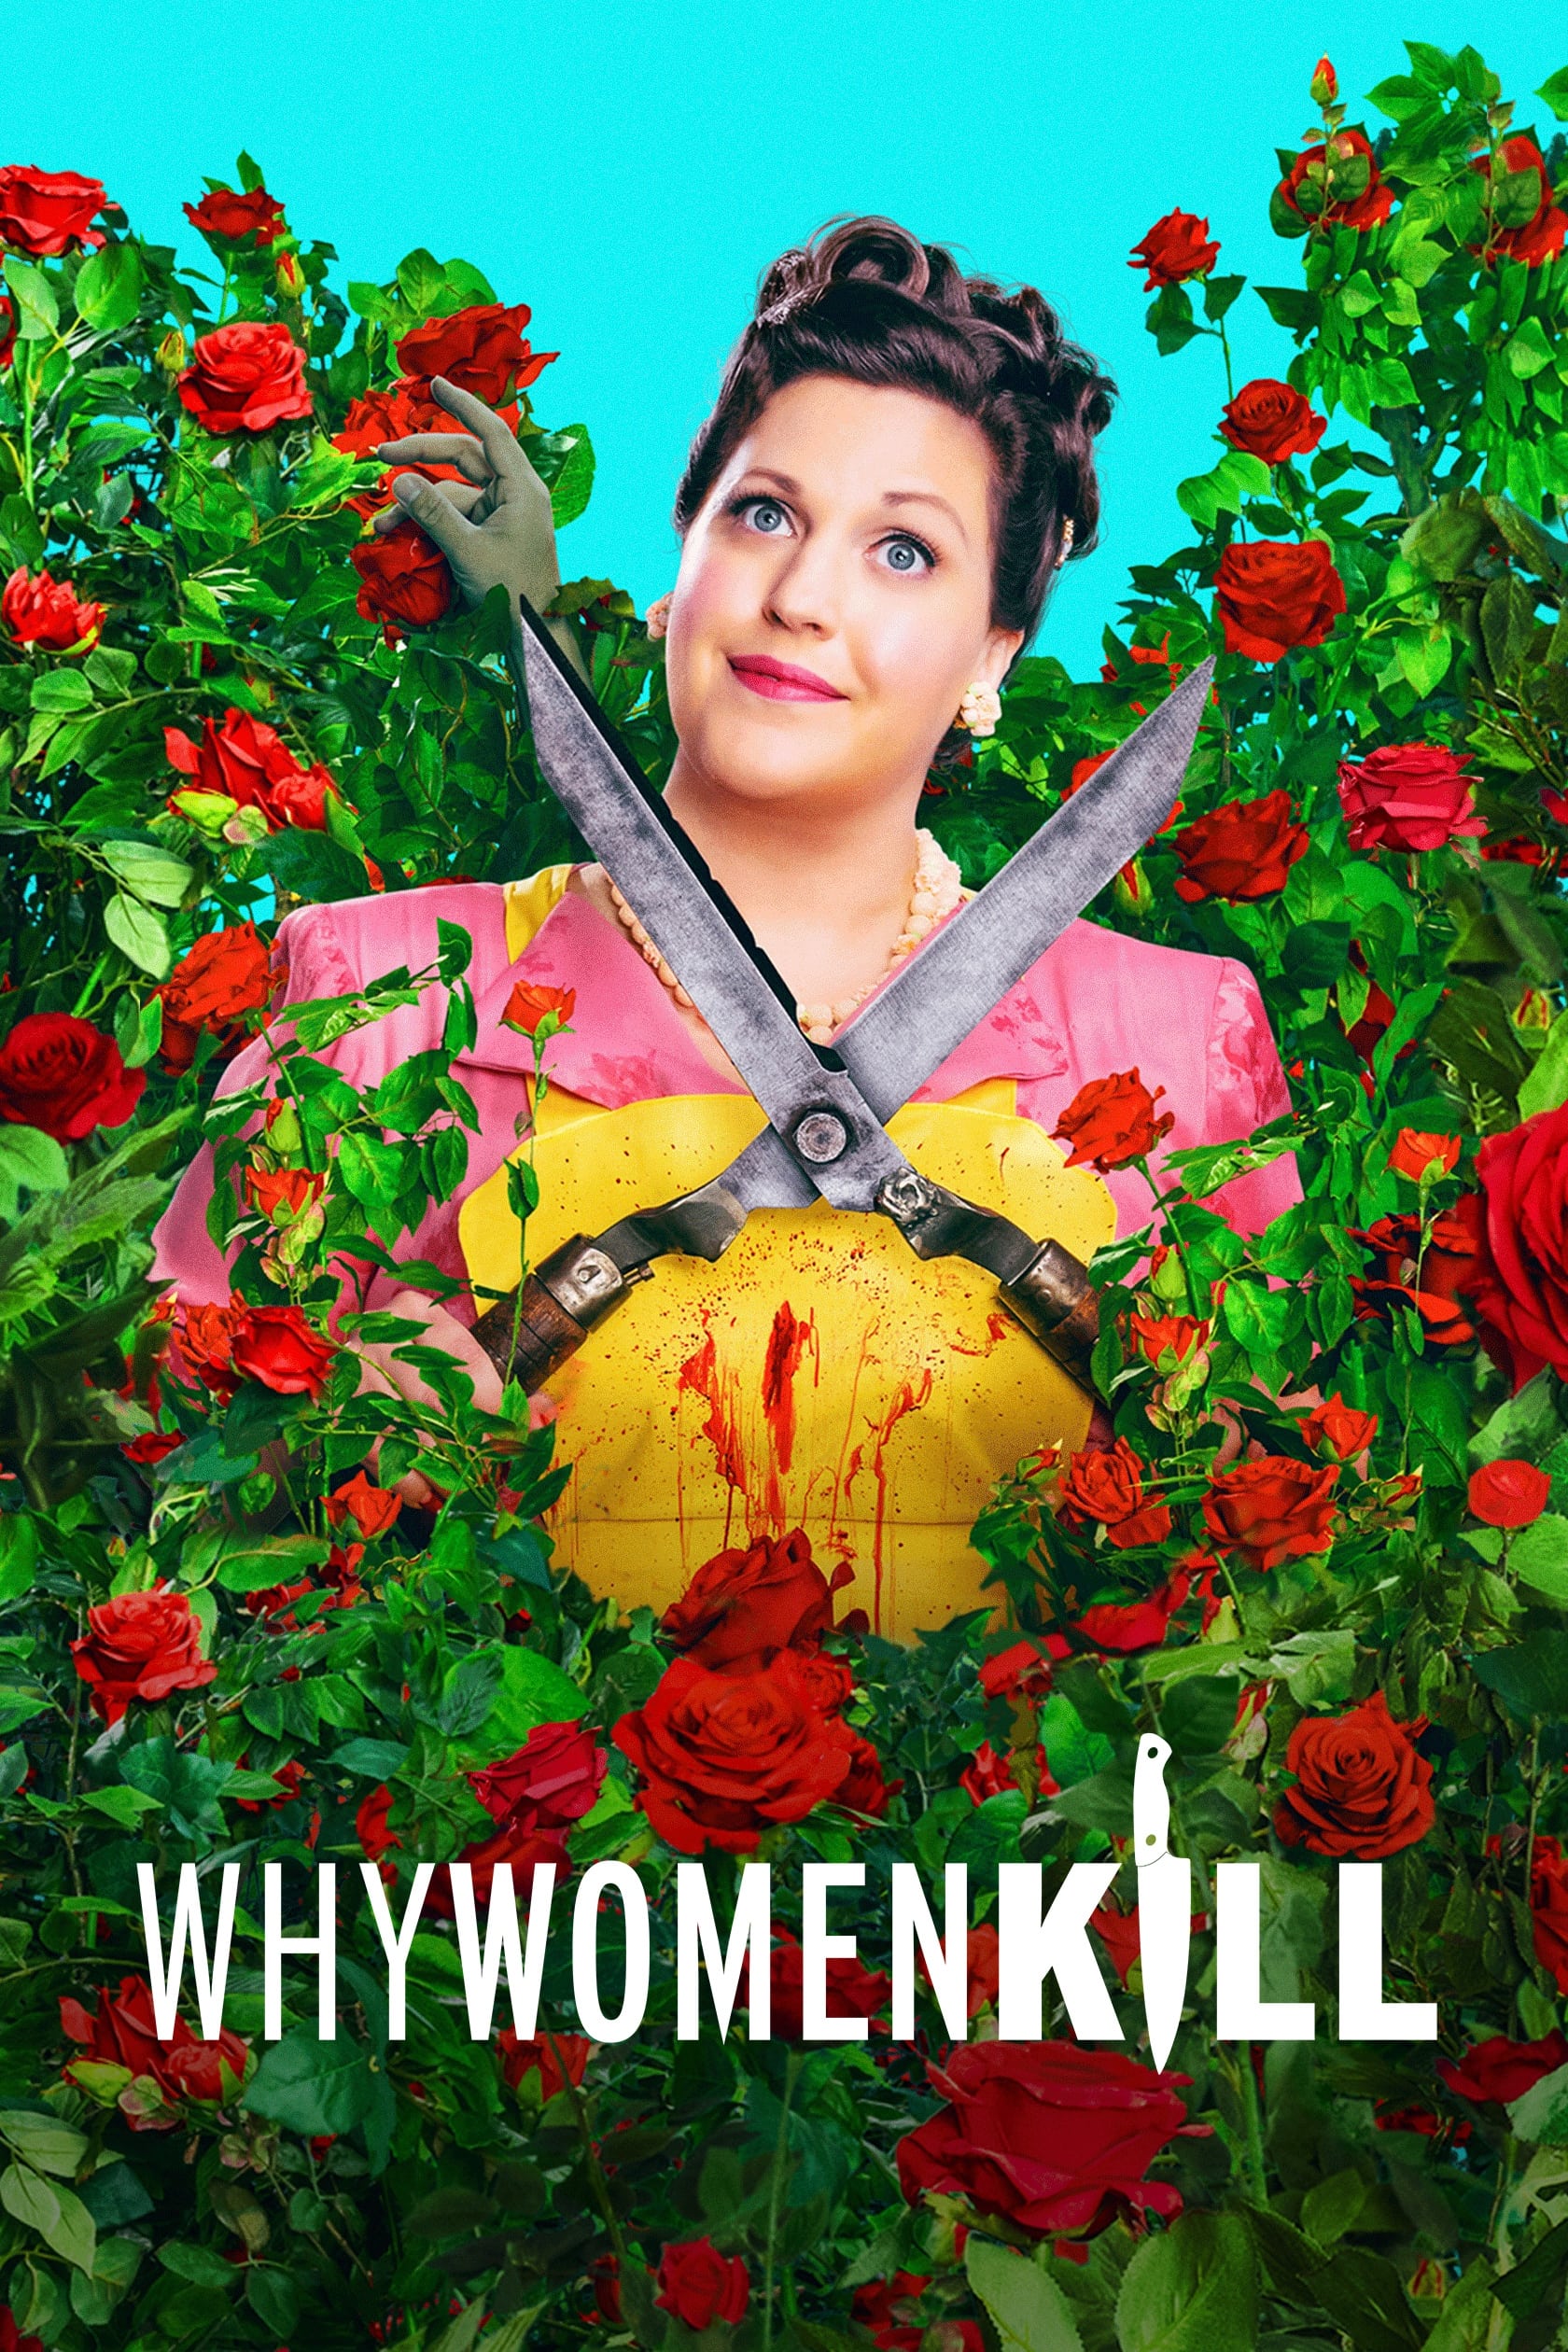 ¿Por qué matan las mujeres?